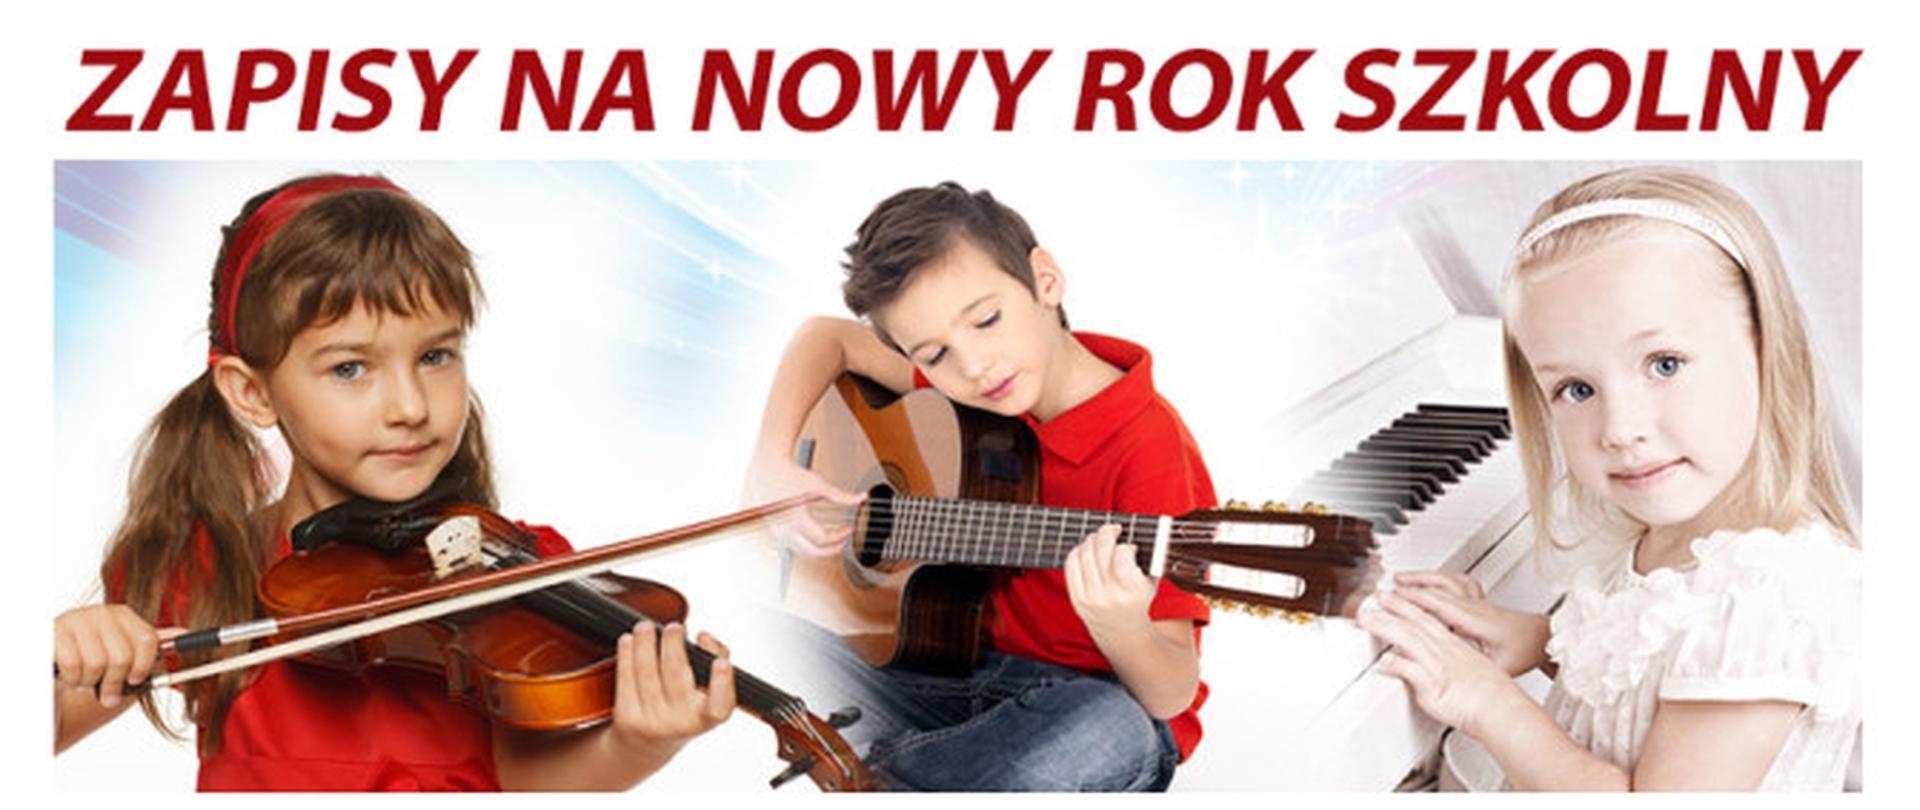 Plakat rekrutacyjny na nowy rok szkolny. Na plakacie dzieci z instrumentami: skrzypcami, gitarą i fortepianem.